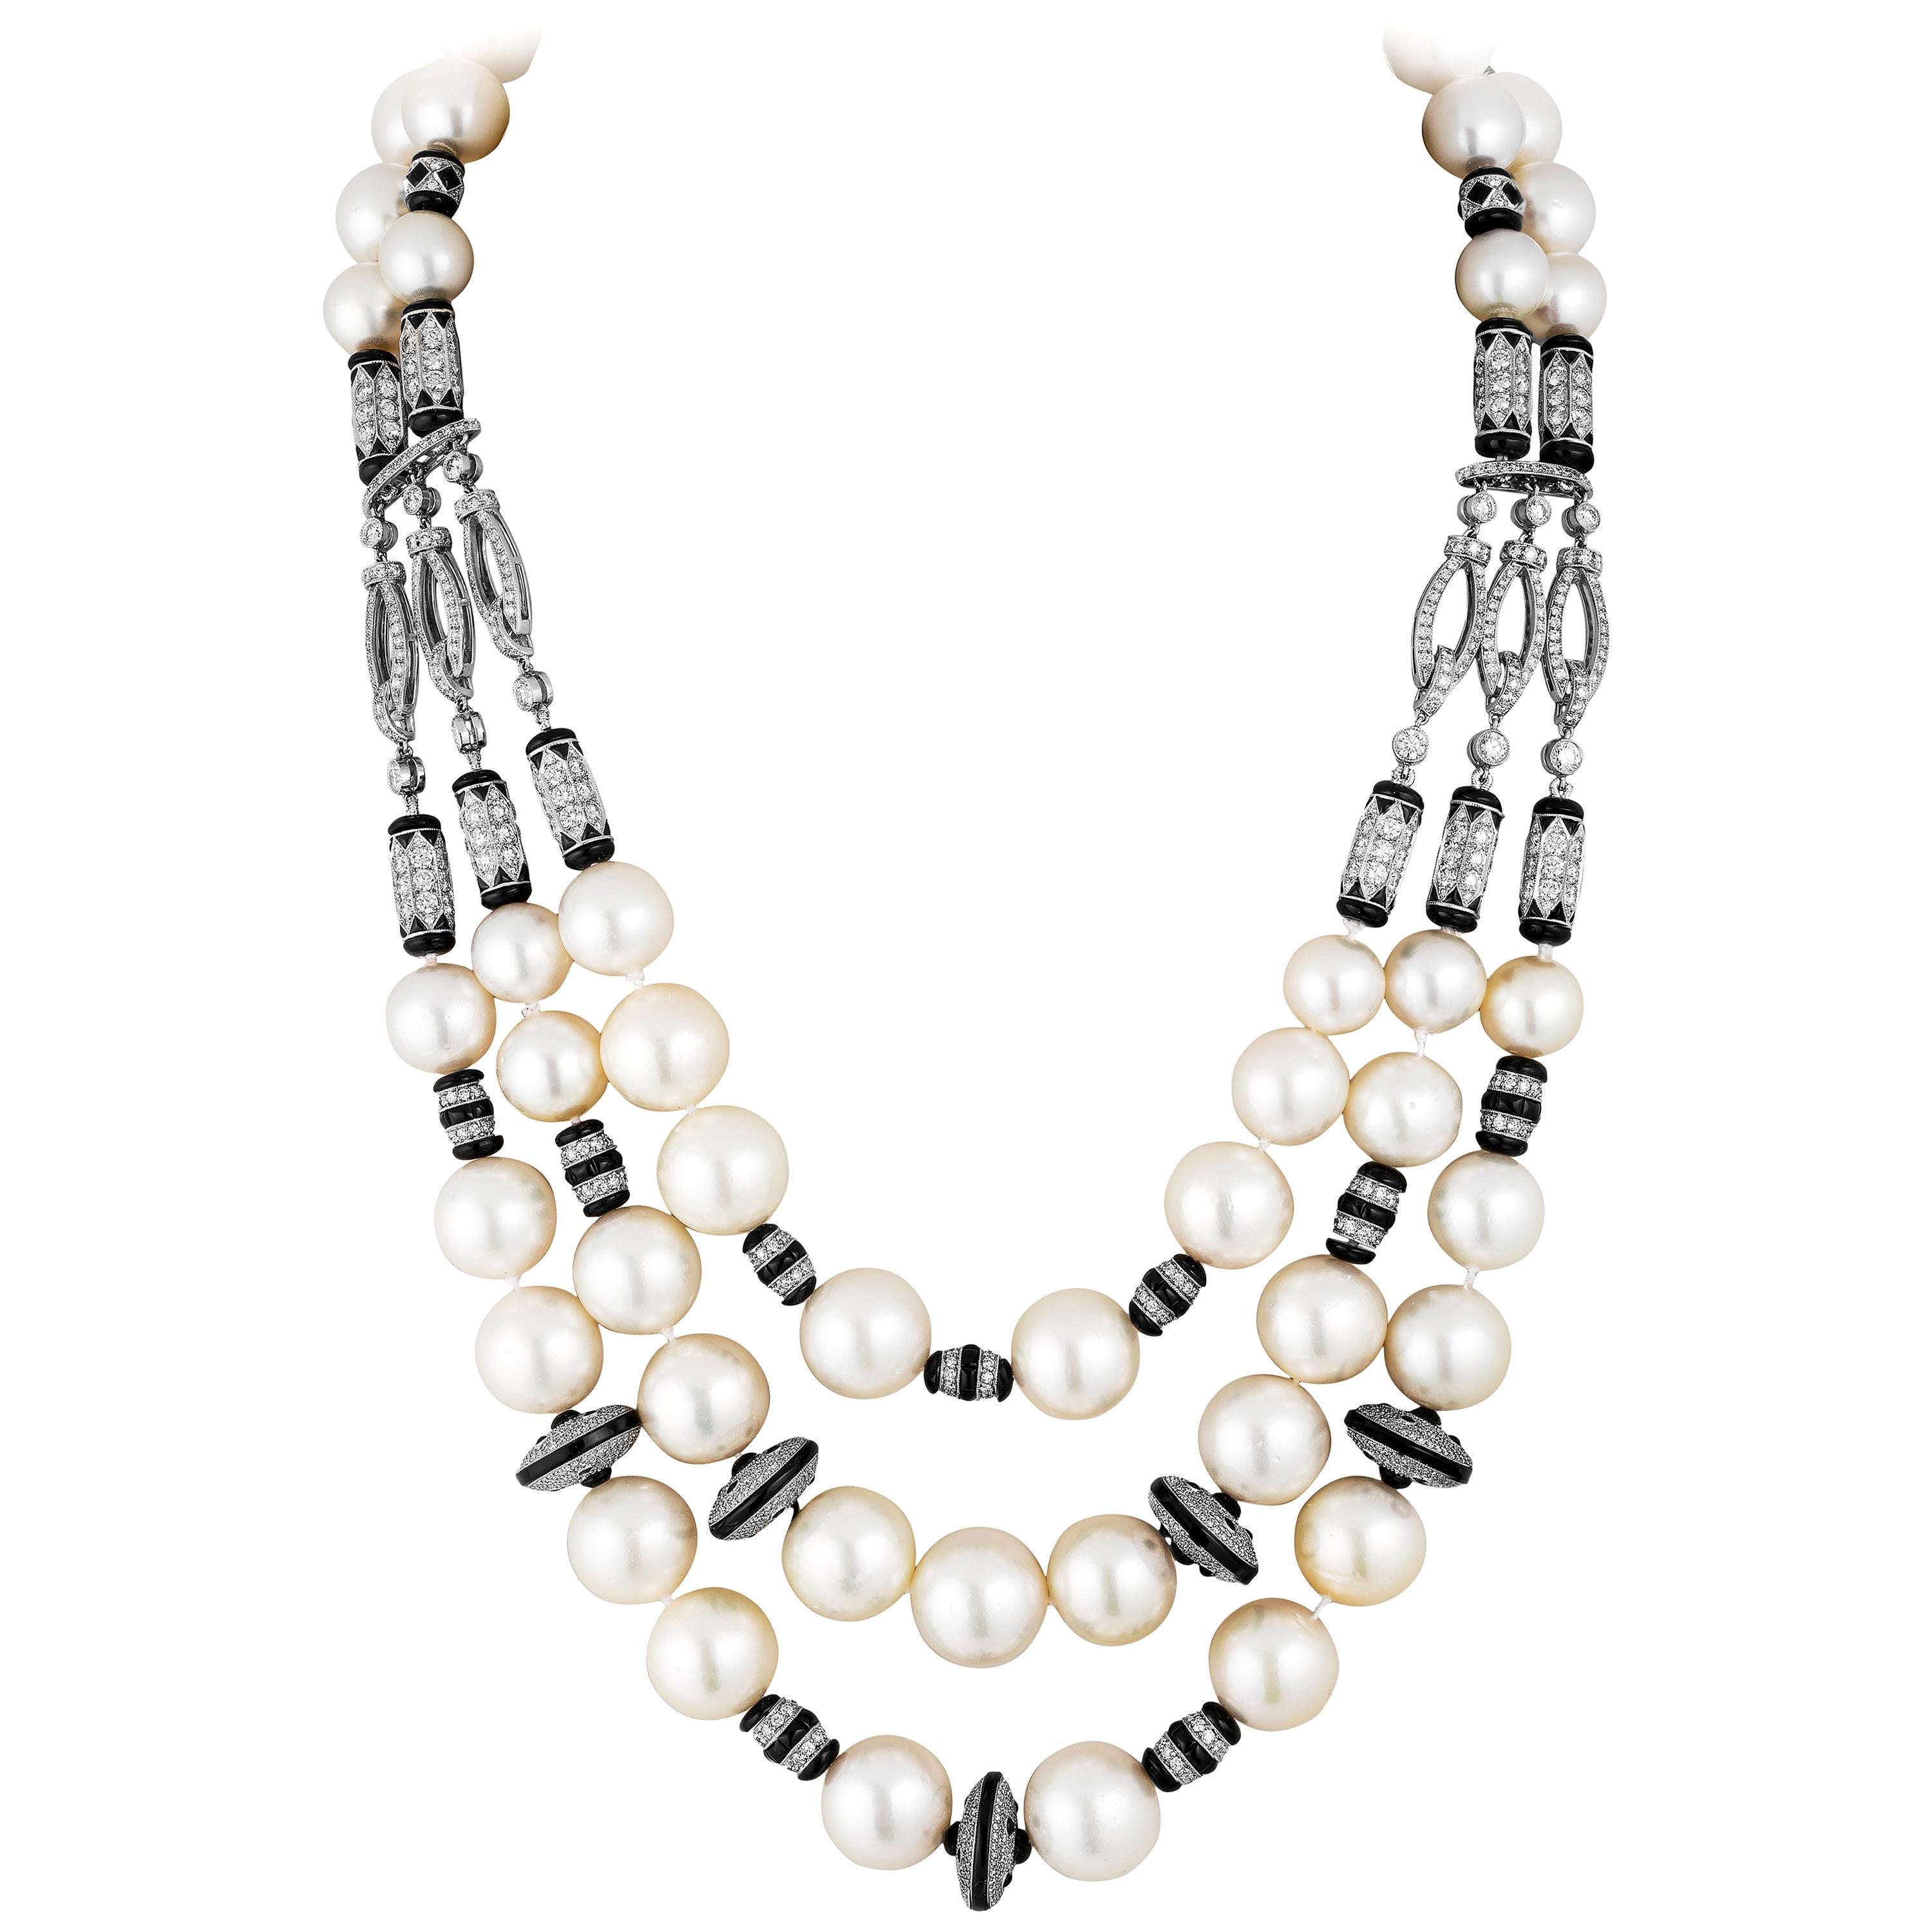 Halskette ausshwara-Perlen und Onyx